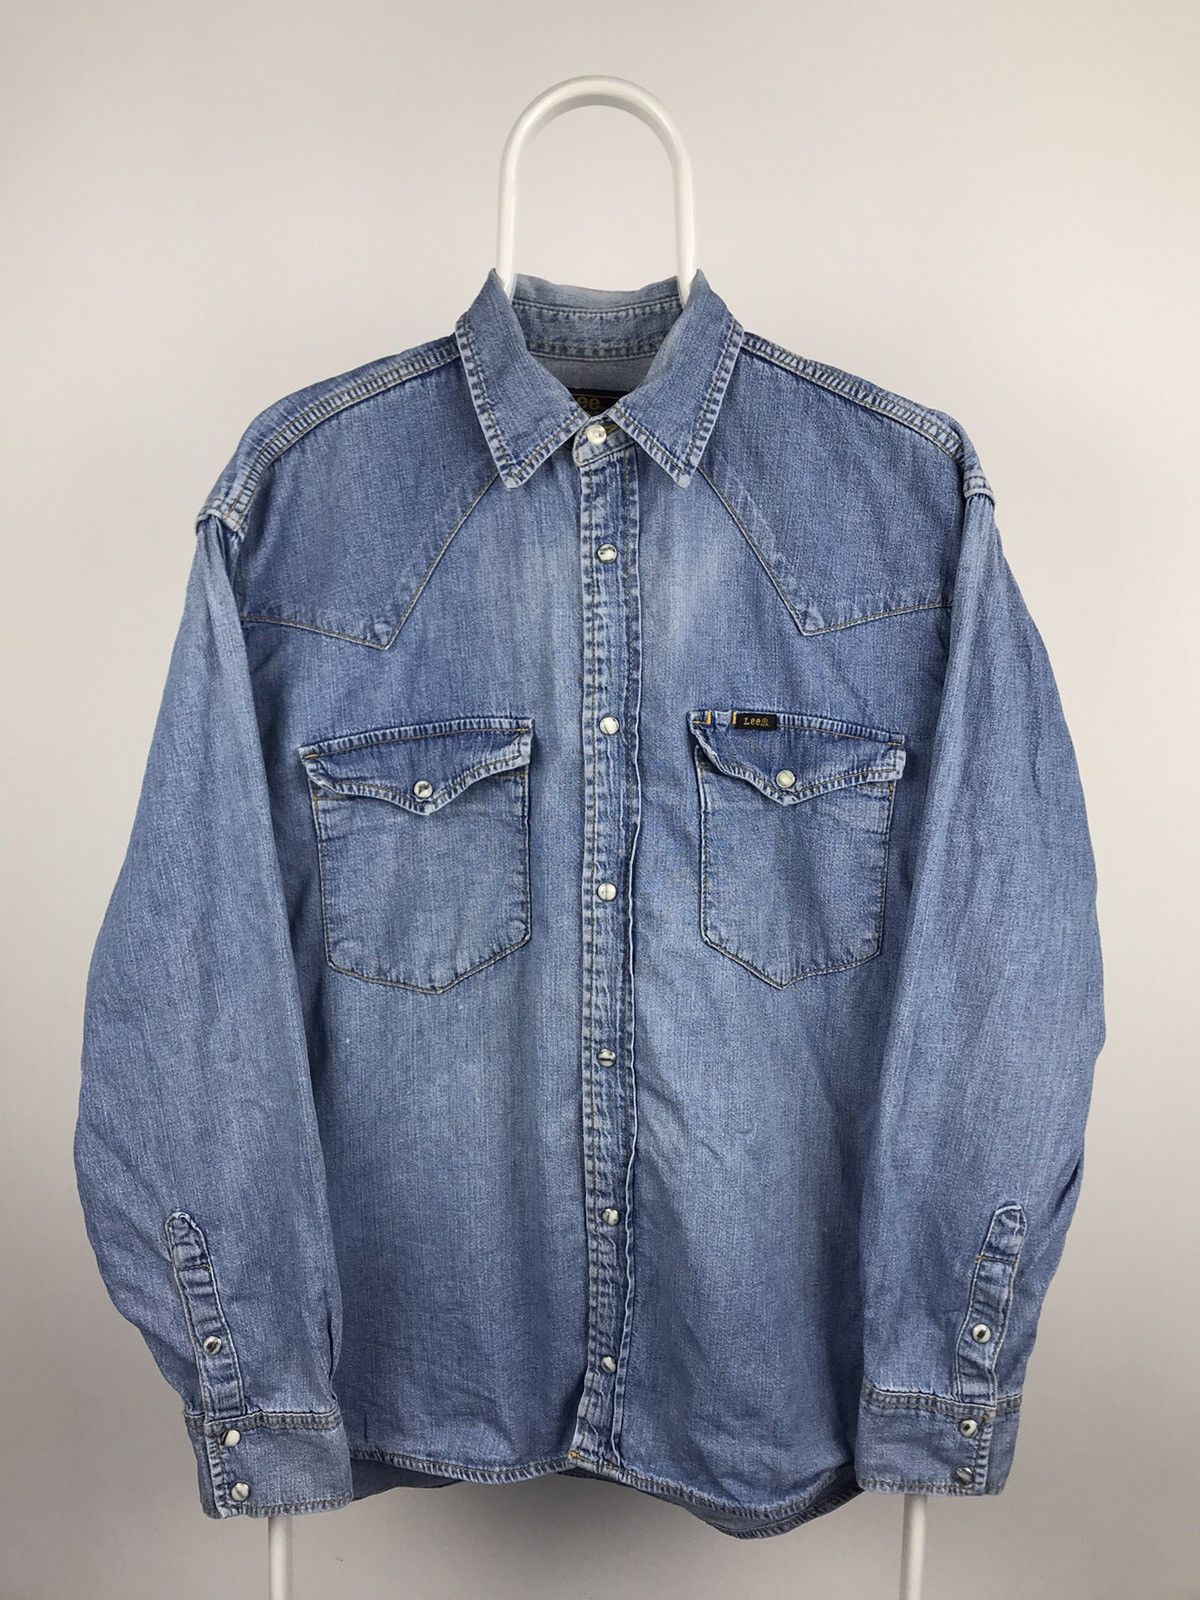 Vintage Vintage Lee Sanforized Union Made Shirts Light Blue | Grailed